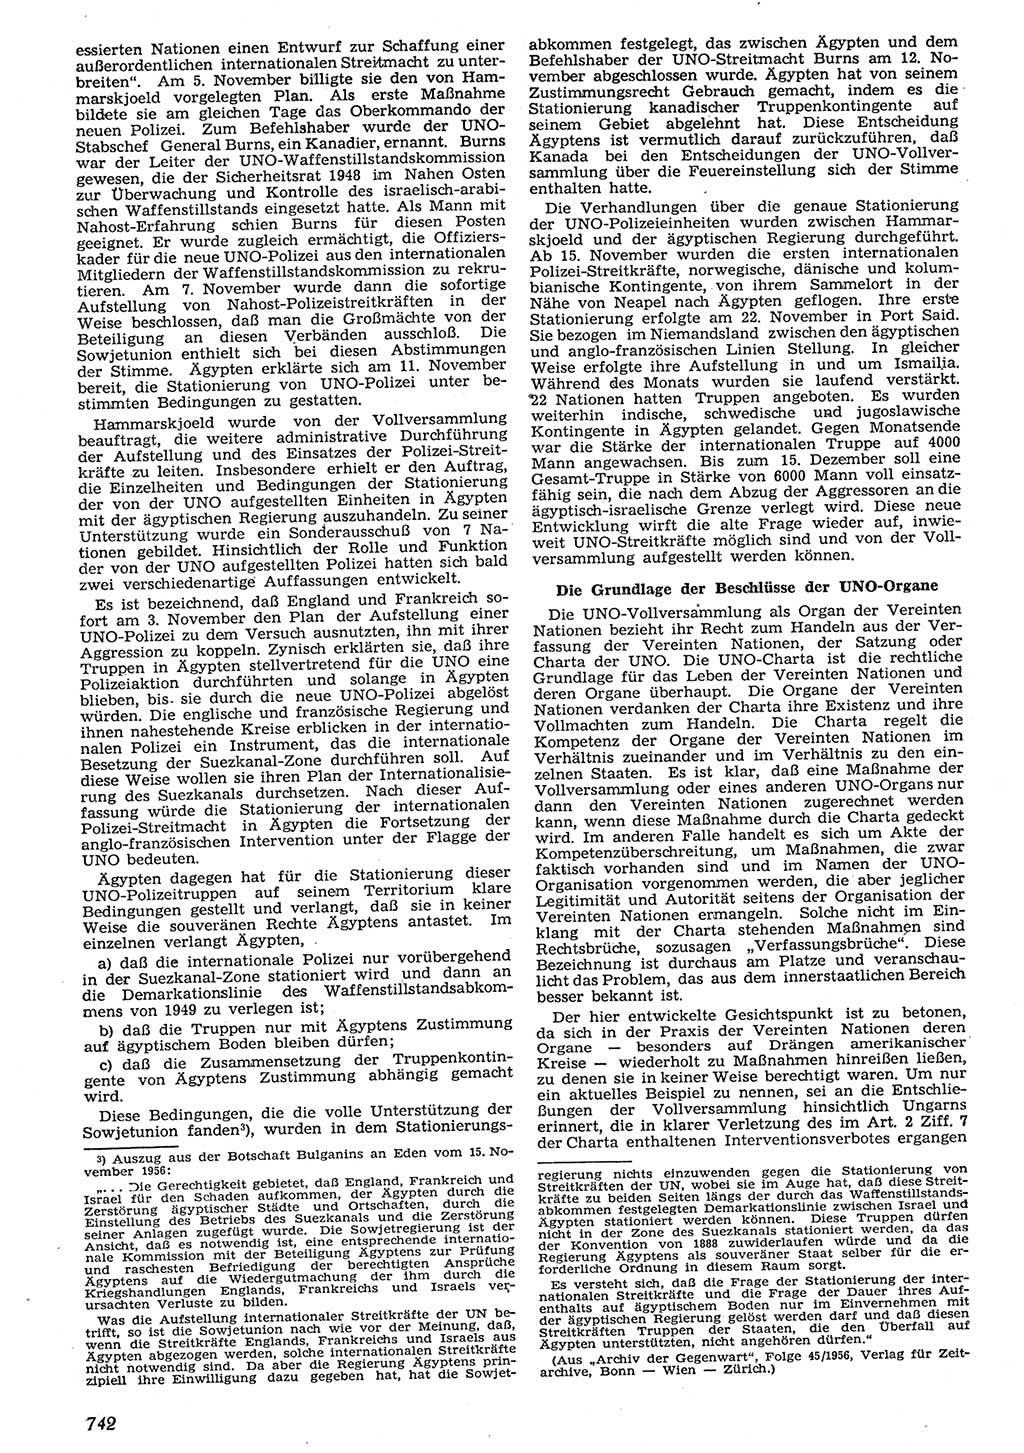 Neue Justiz (NJ), Zeitschrift für Recht und Rechtswissenschaft [Deutsche Demokratische Republik (DDR)], 10. Jahrgang 1956, Seite 742 (NJ DDR 1956, S. 742)